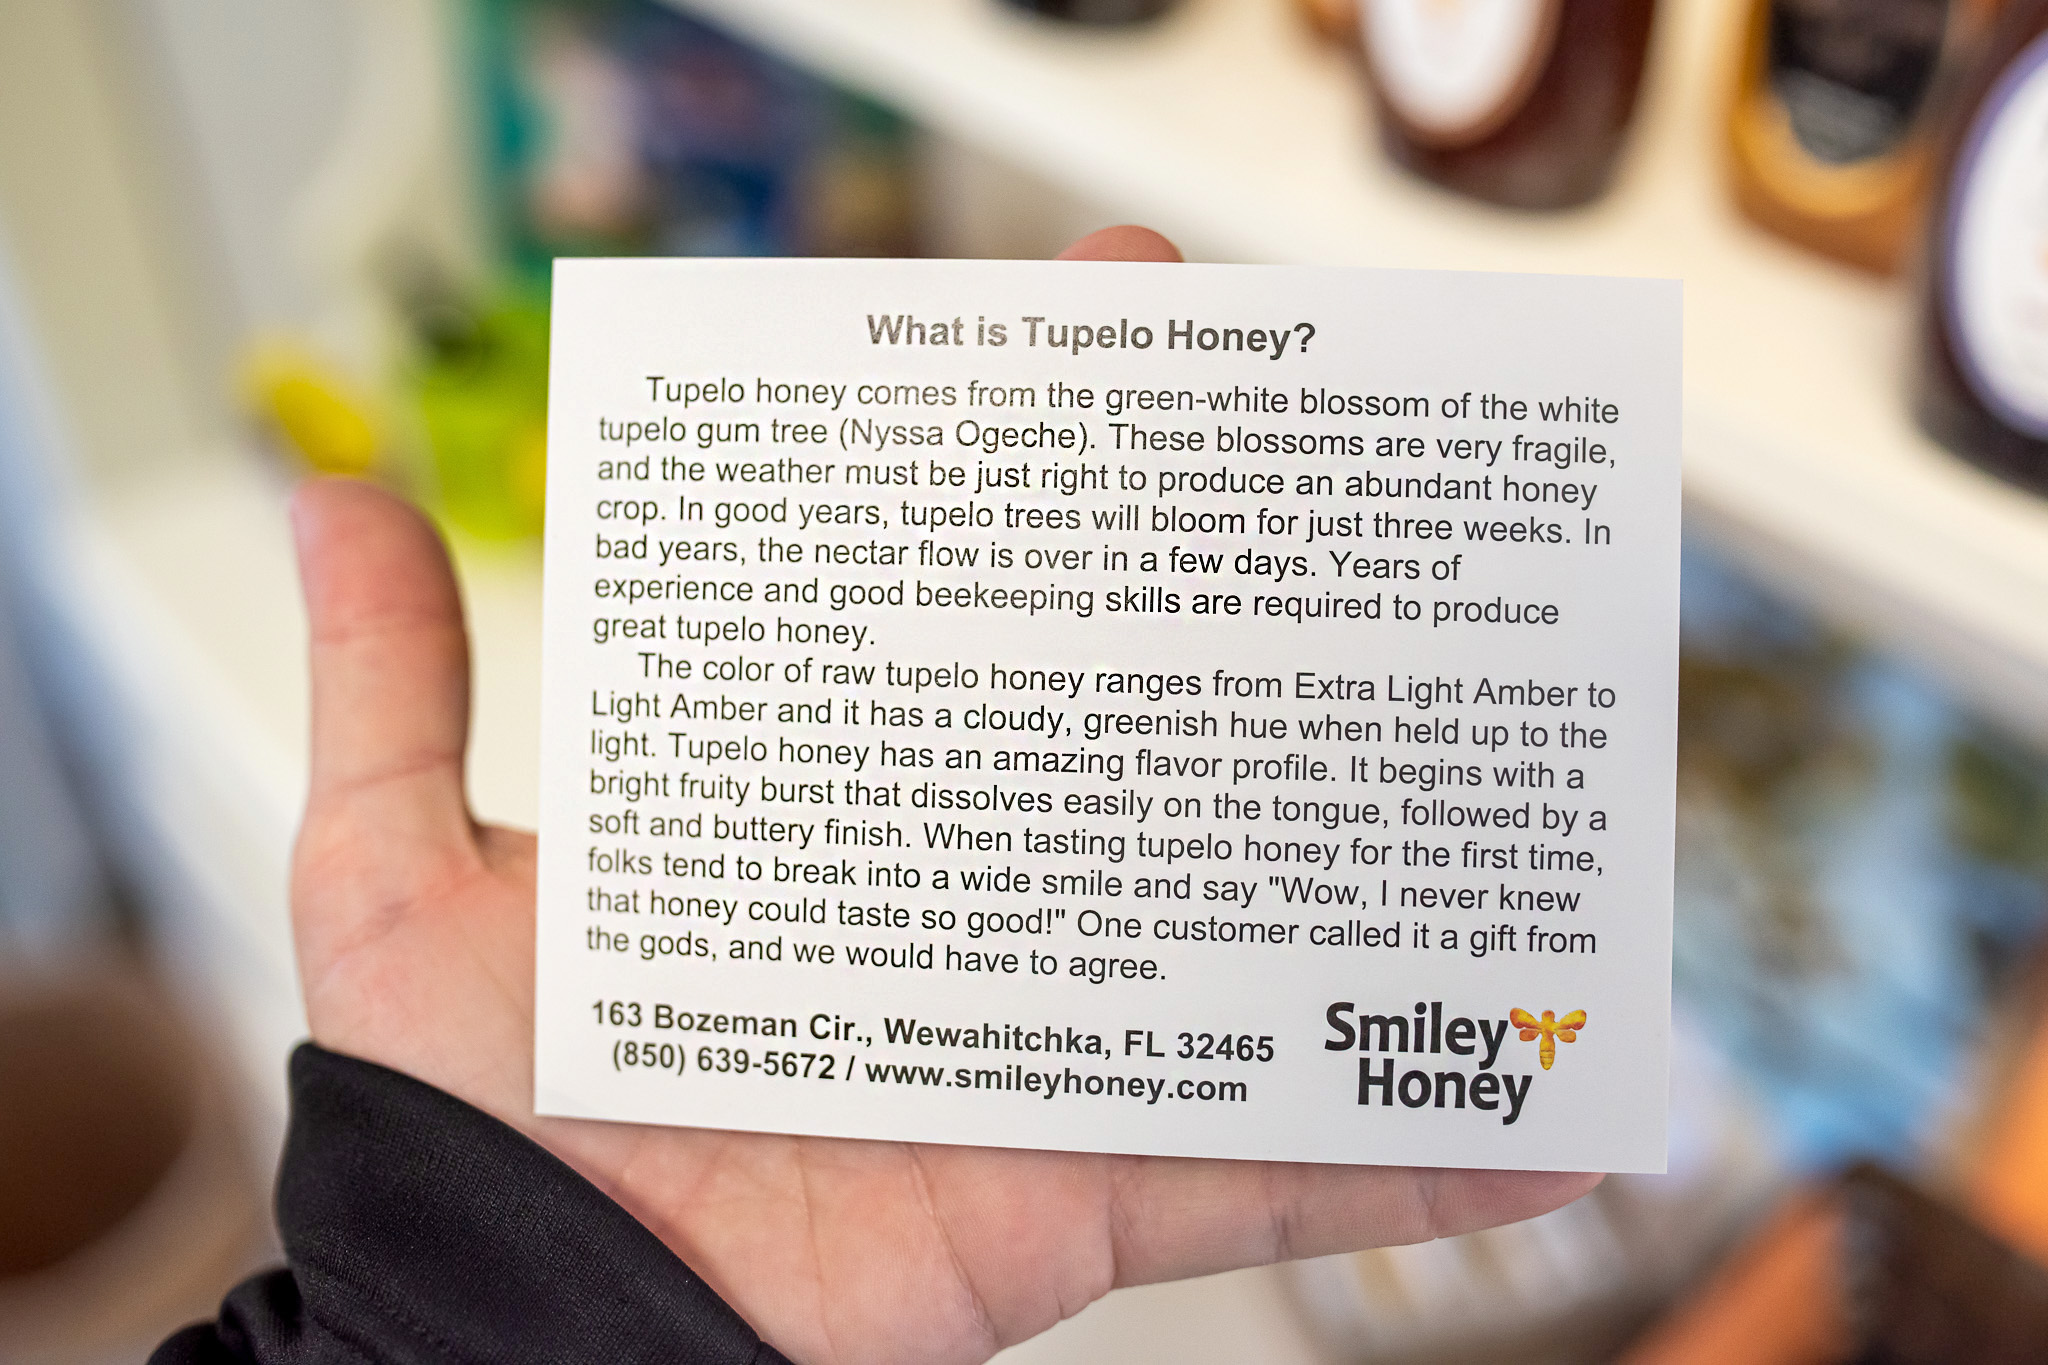 where is tupelo honey made